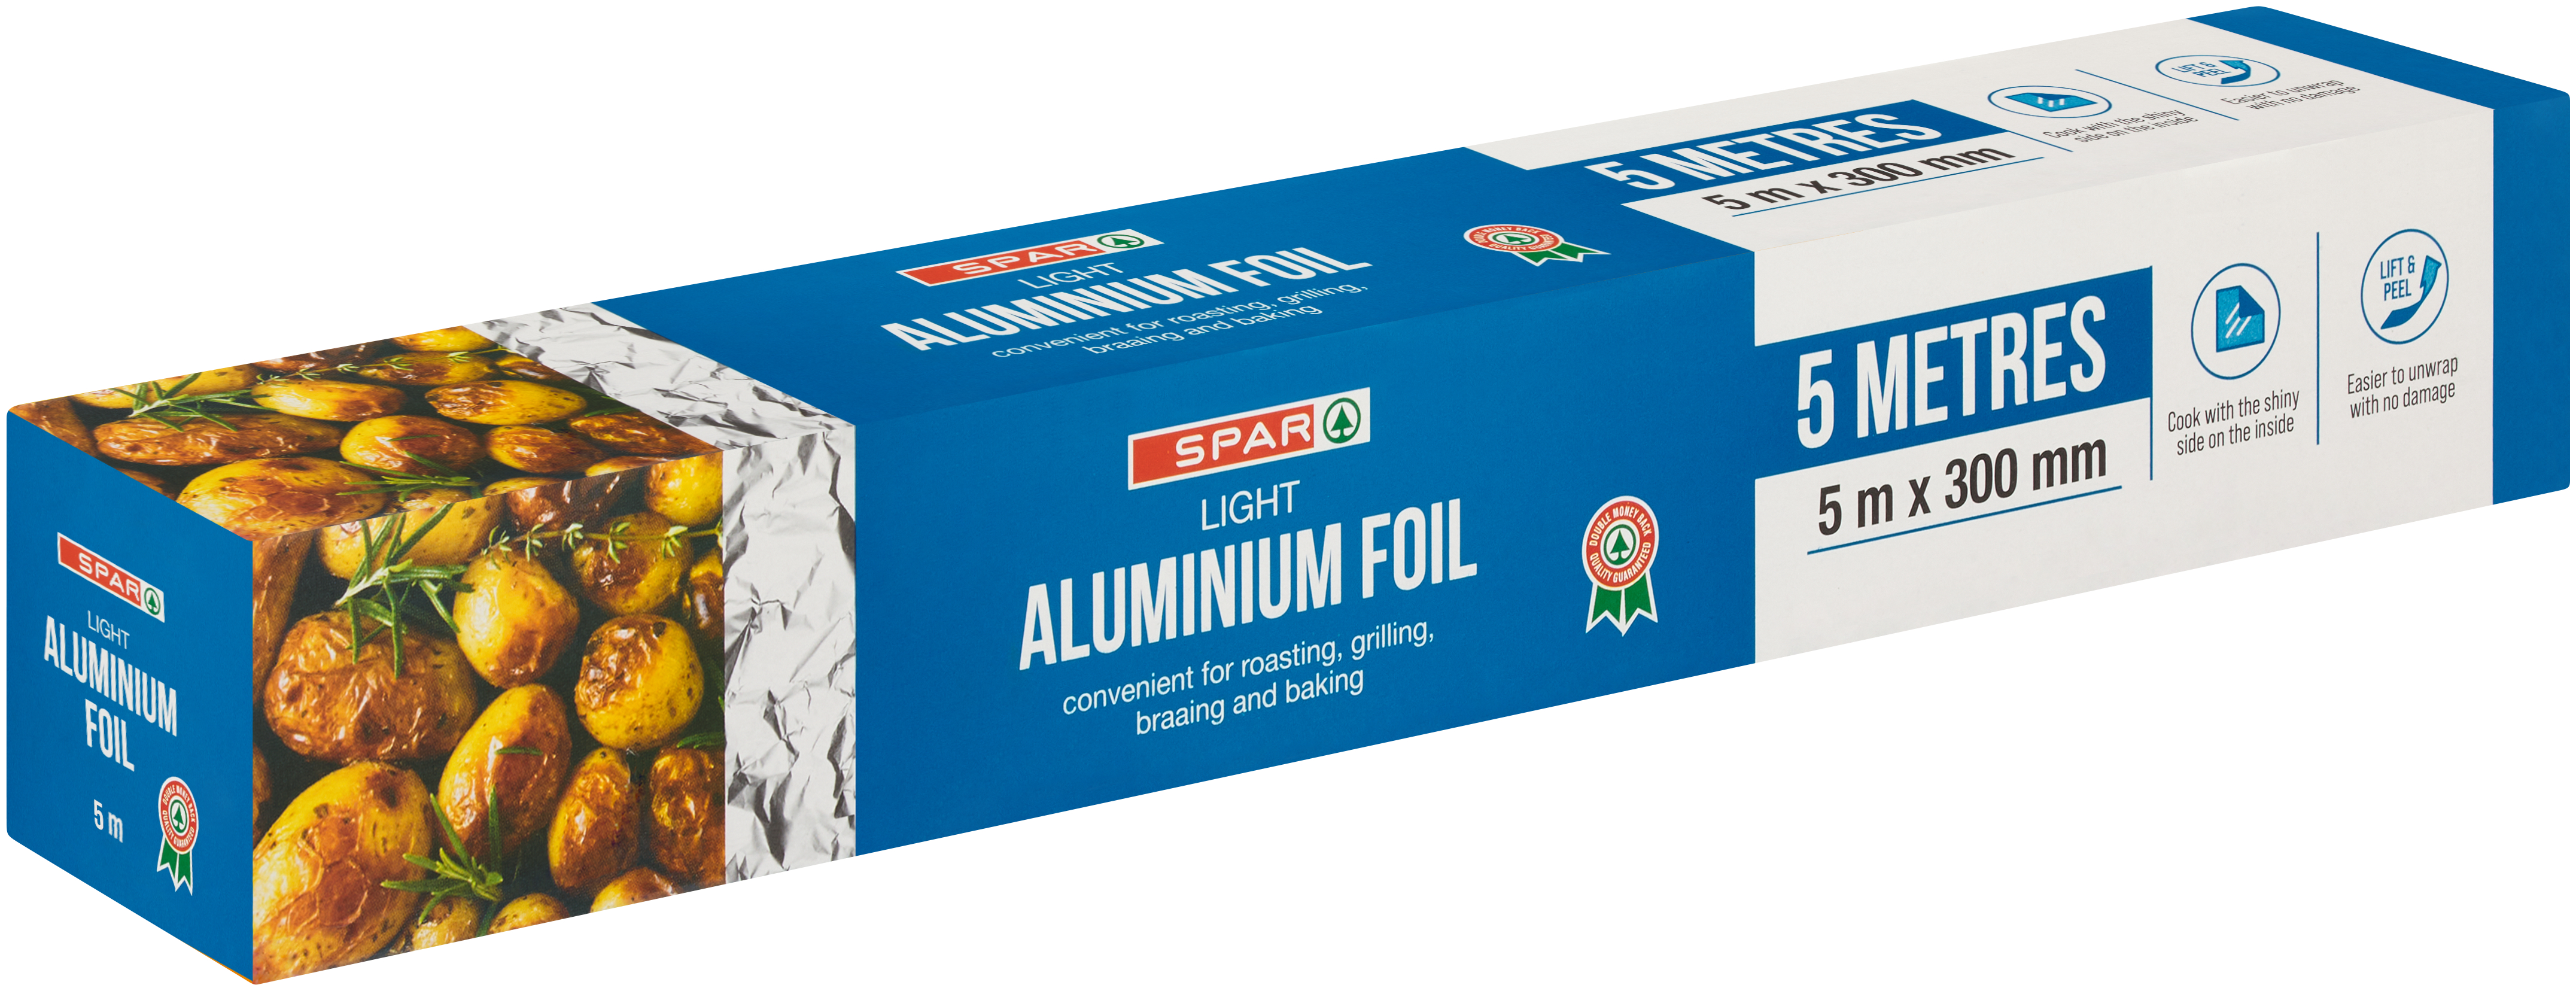 light aluminium foil